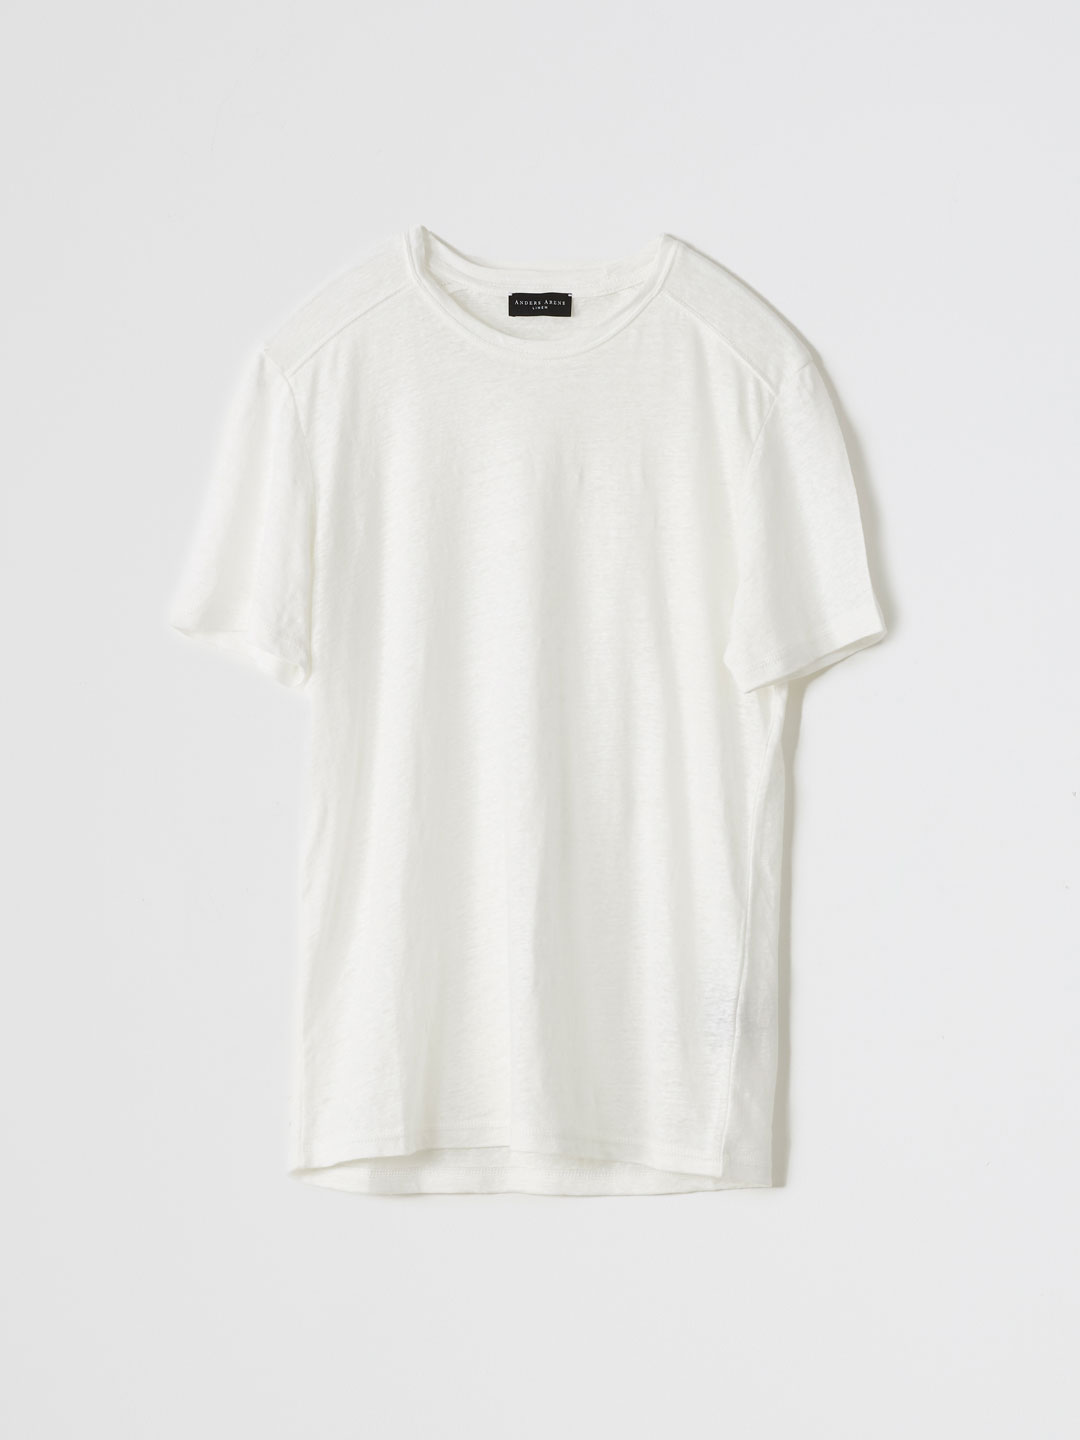 MARBELLA T-shirt - White